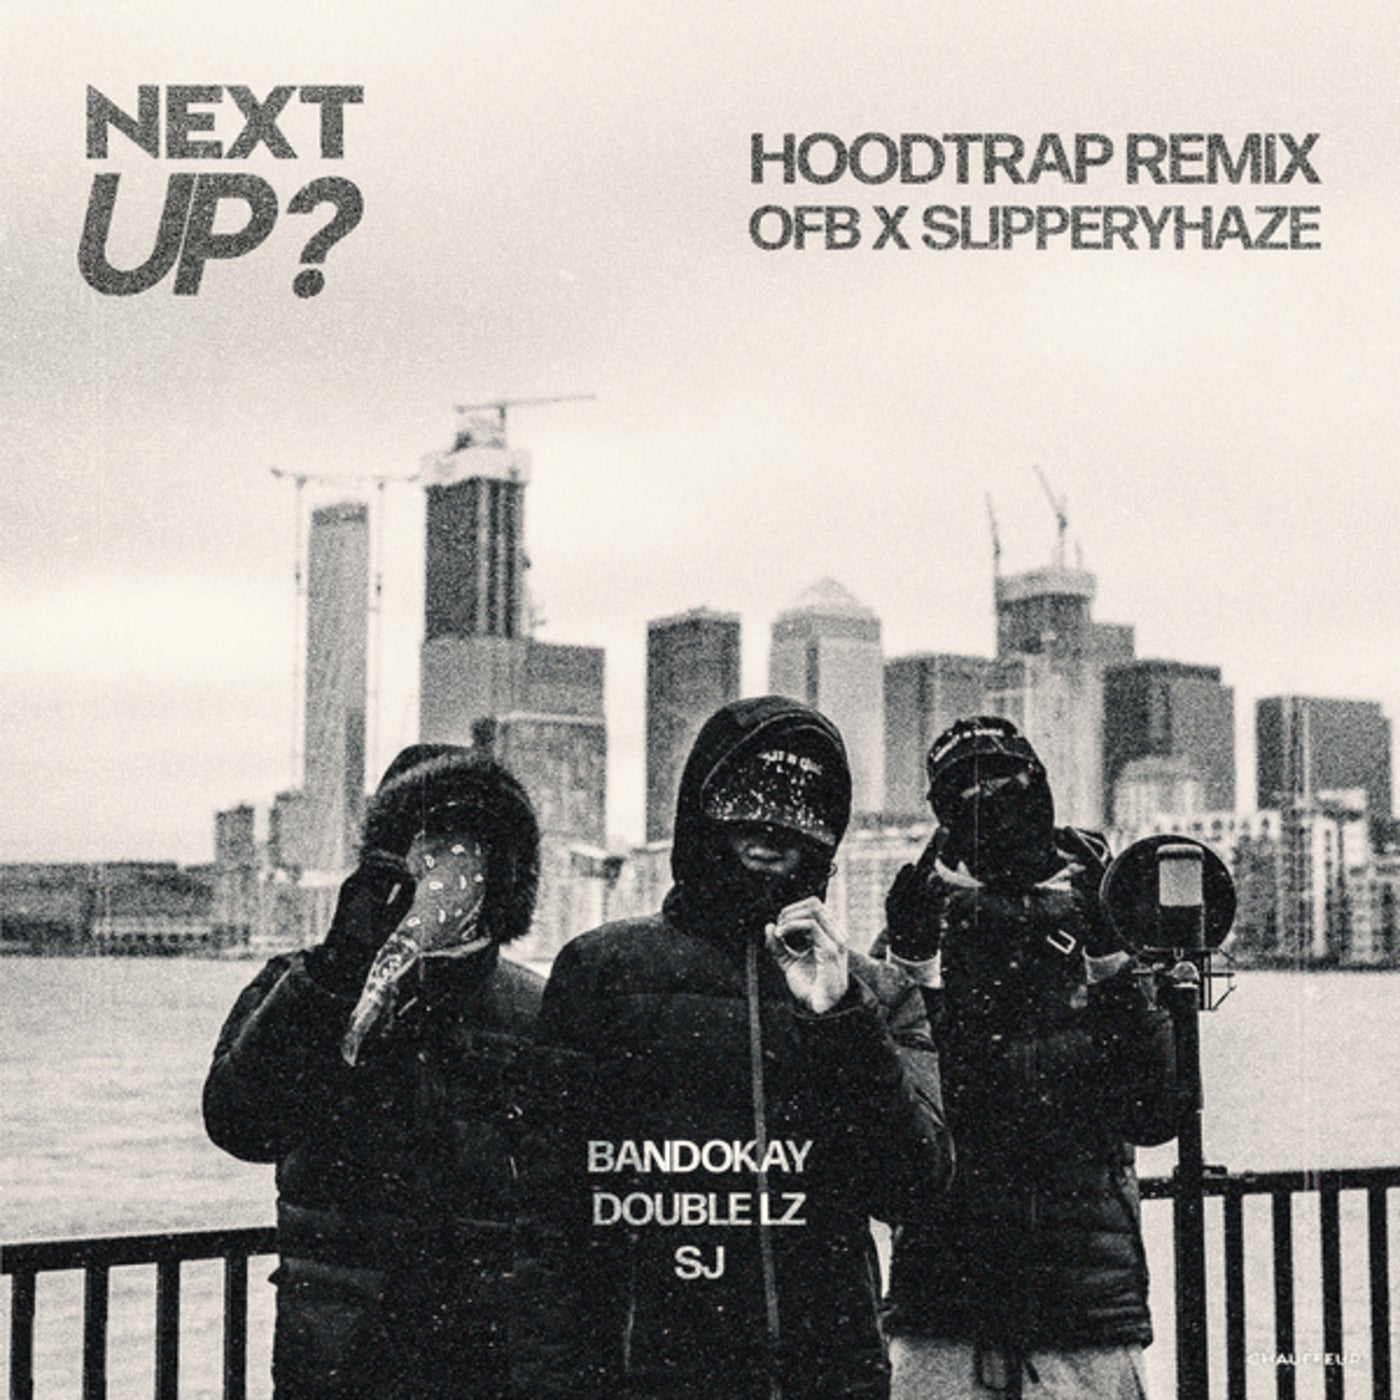 Next Up (Hoodtrap Remix) by BandoKay, Double Lz, SJ, OFB, Mixtape 